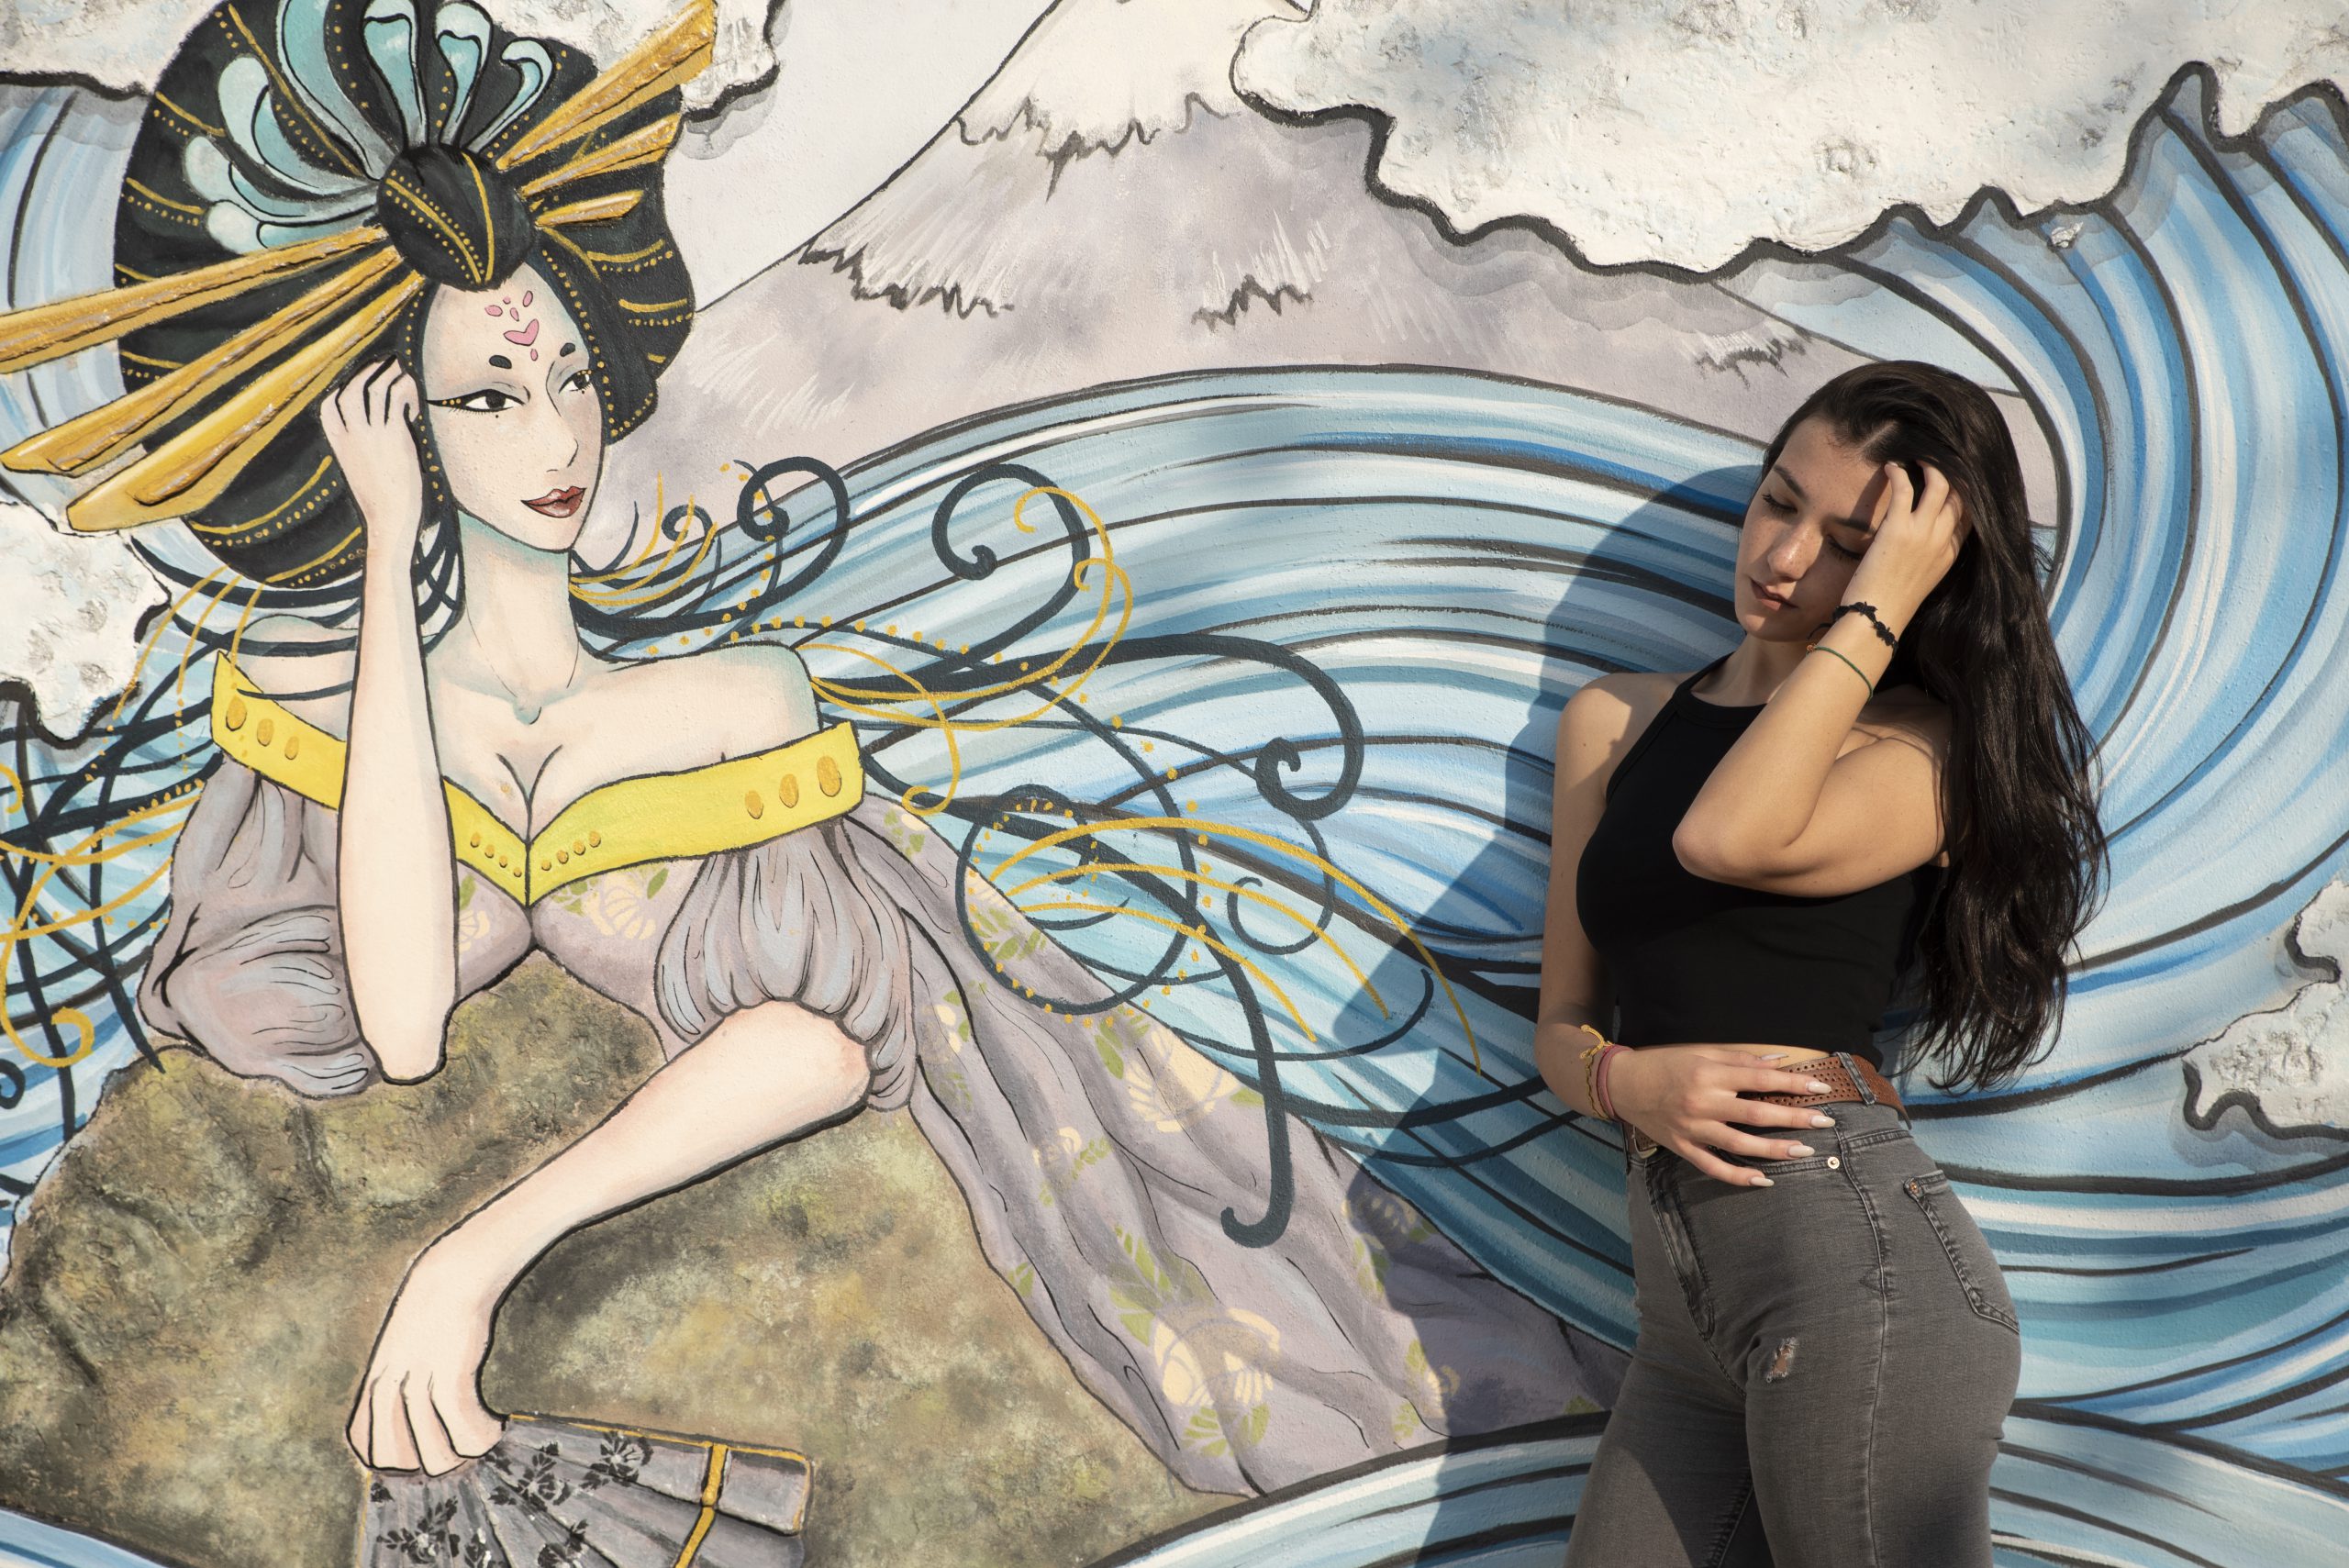 Una giovane modella che mima una donna giapponese disegnata su un murales.